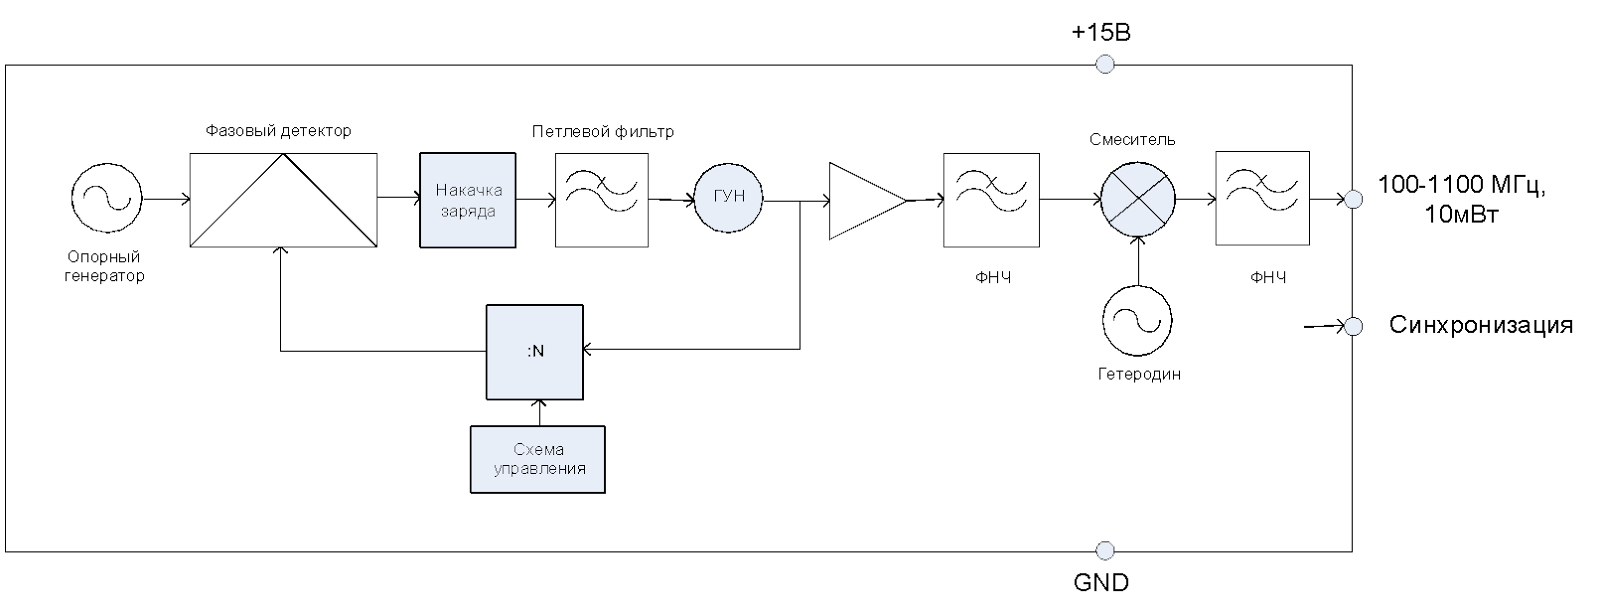 Рис. 2 – Функциональная схема передающего устройства FMCW георадара